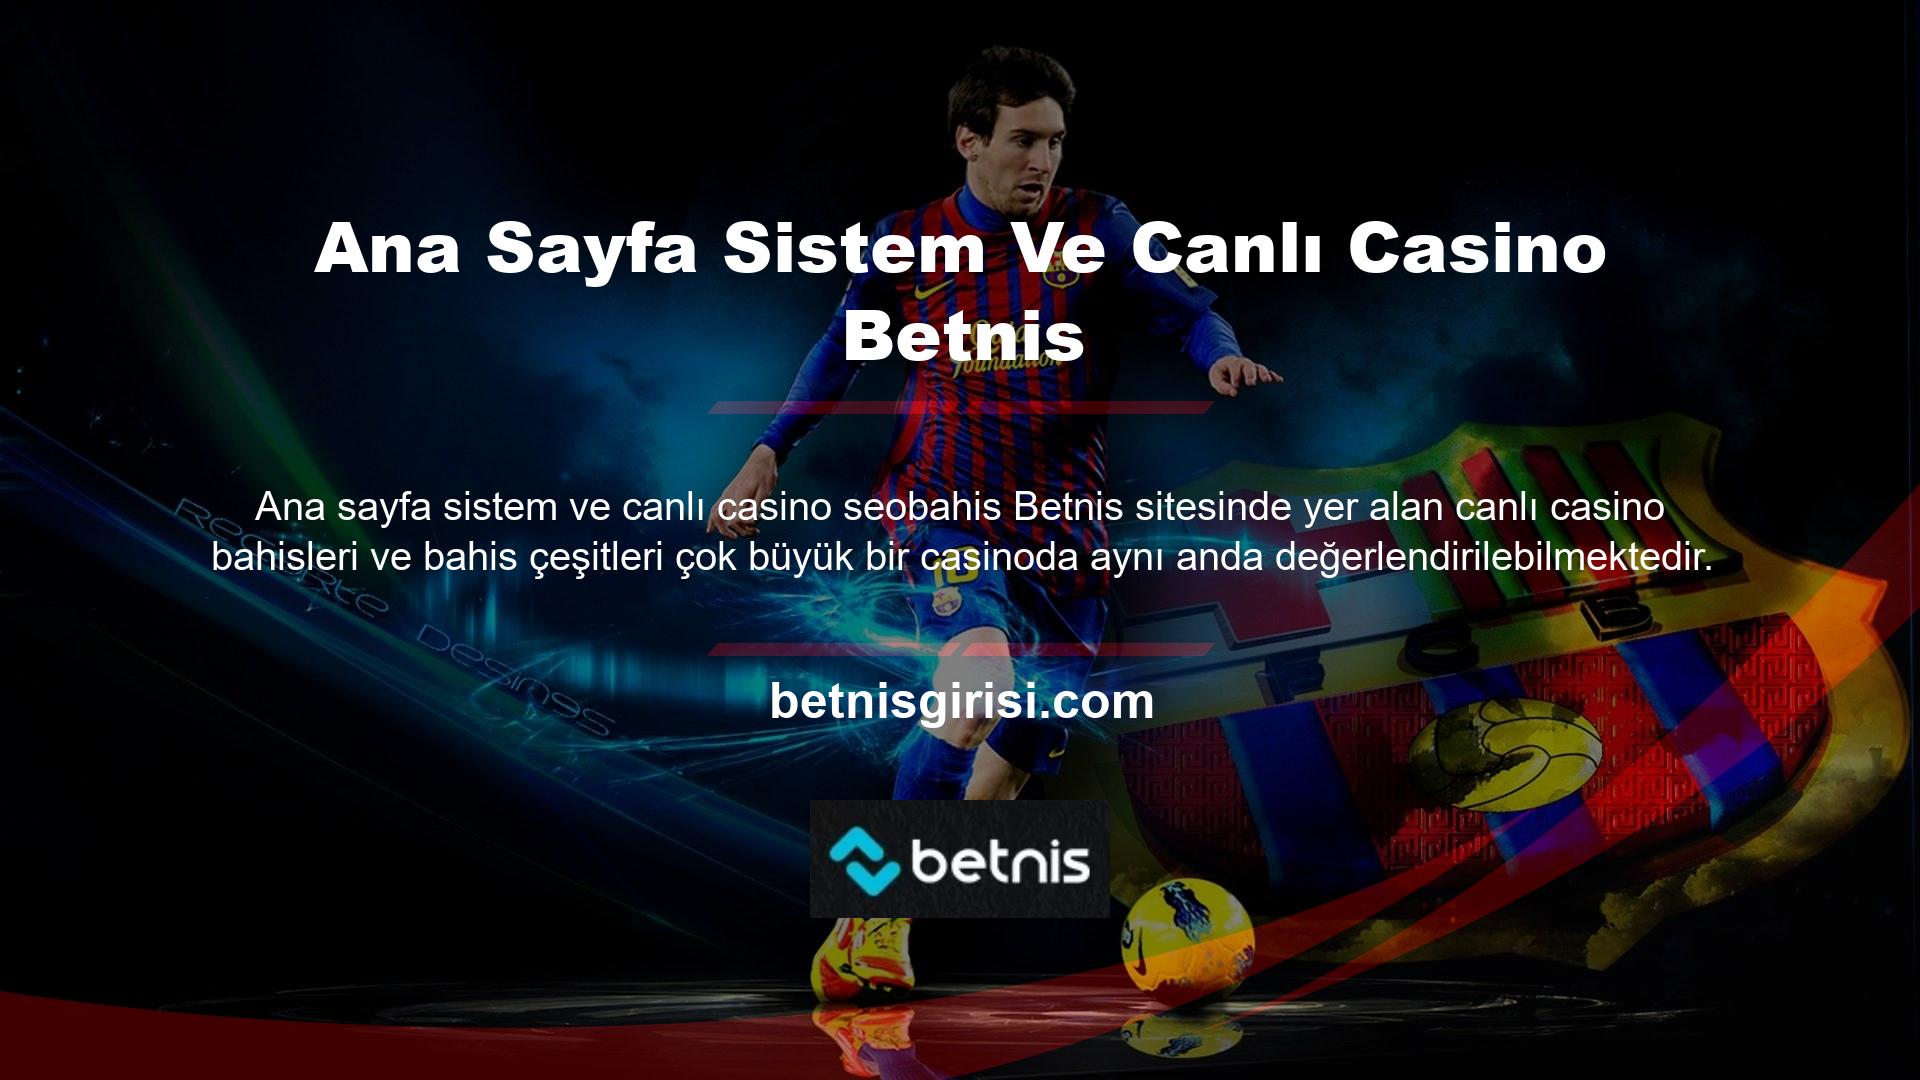 Betnis web sitesi altyapı platformu ve lisans anlaşmaları yurt dışından kaynaklı ve kalıcı olup, üyelerin güvenilir bir altyapı platformu aracılığıyla web sitelerinde oyun oynamasını ve para kazanmasını kolaylaştırır